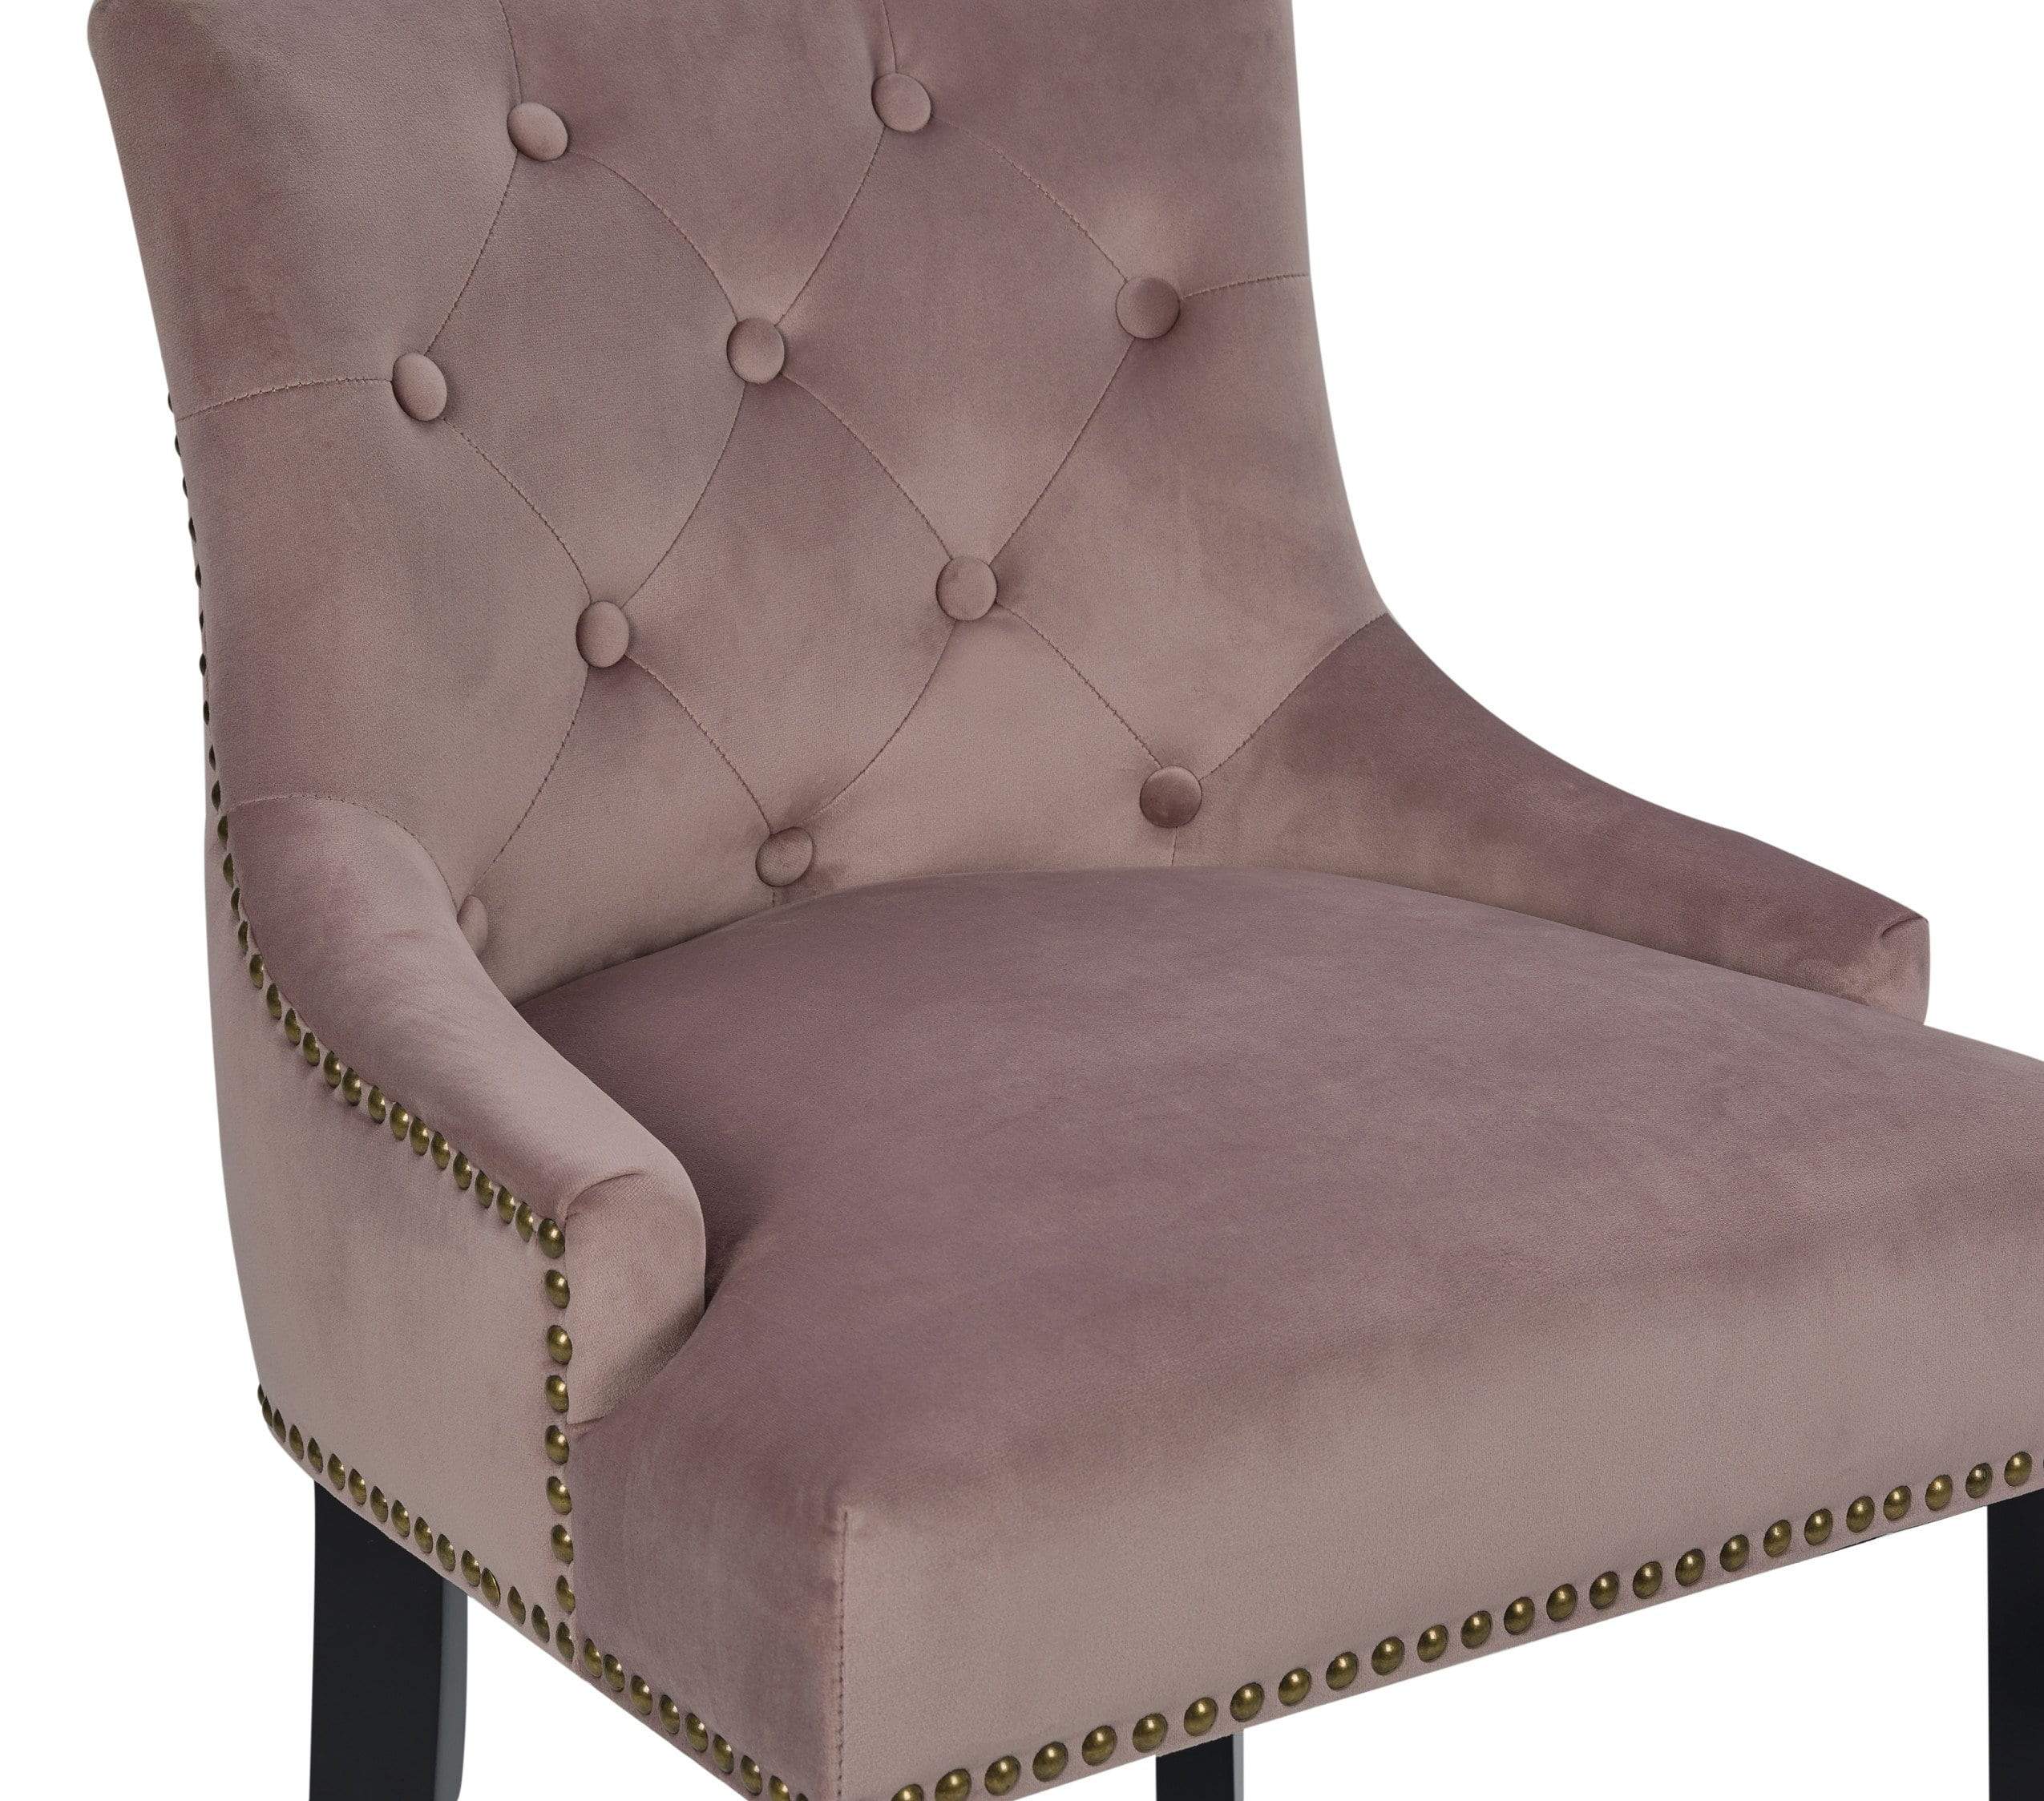 Leigh Tufted Velvet Counter Stool Chair